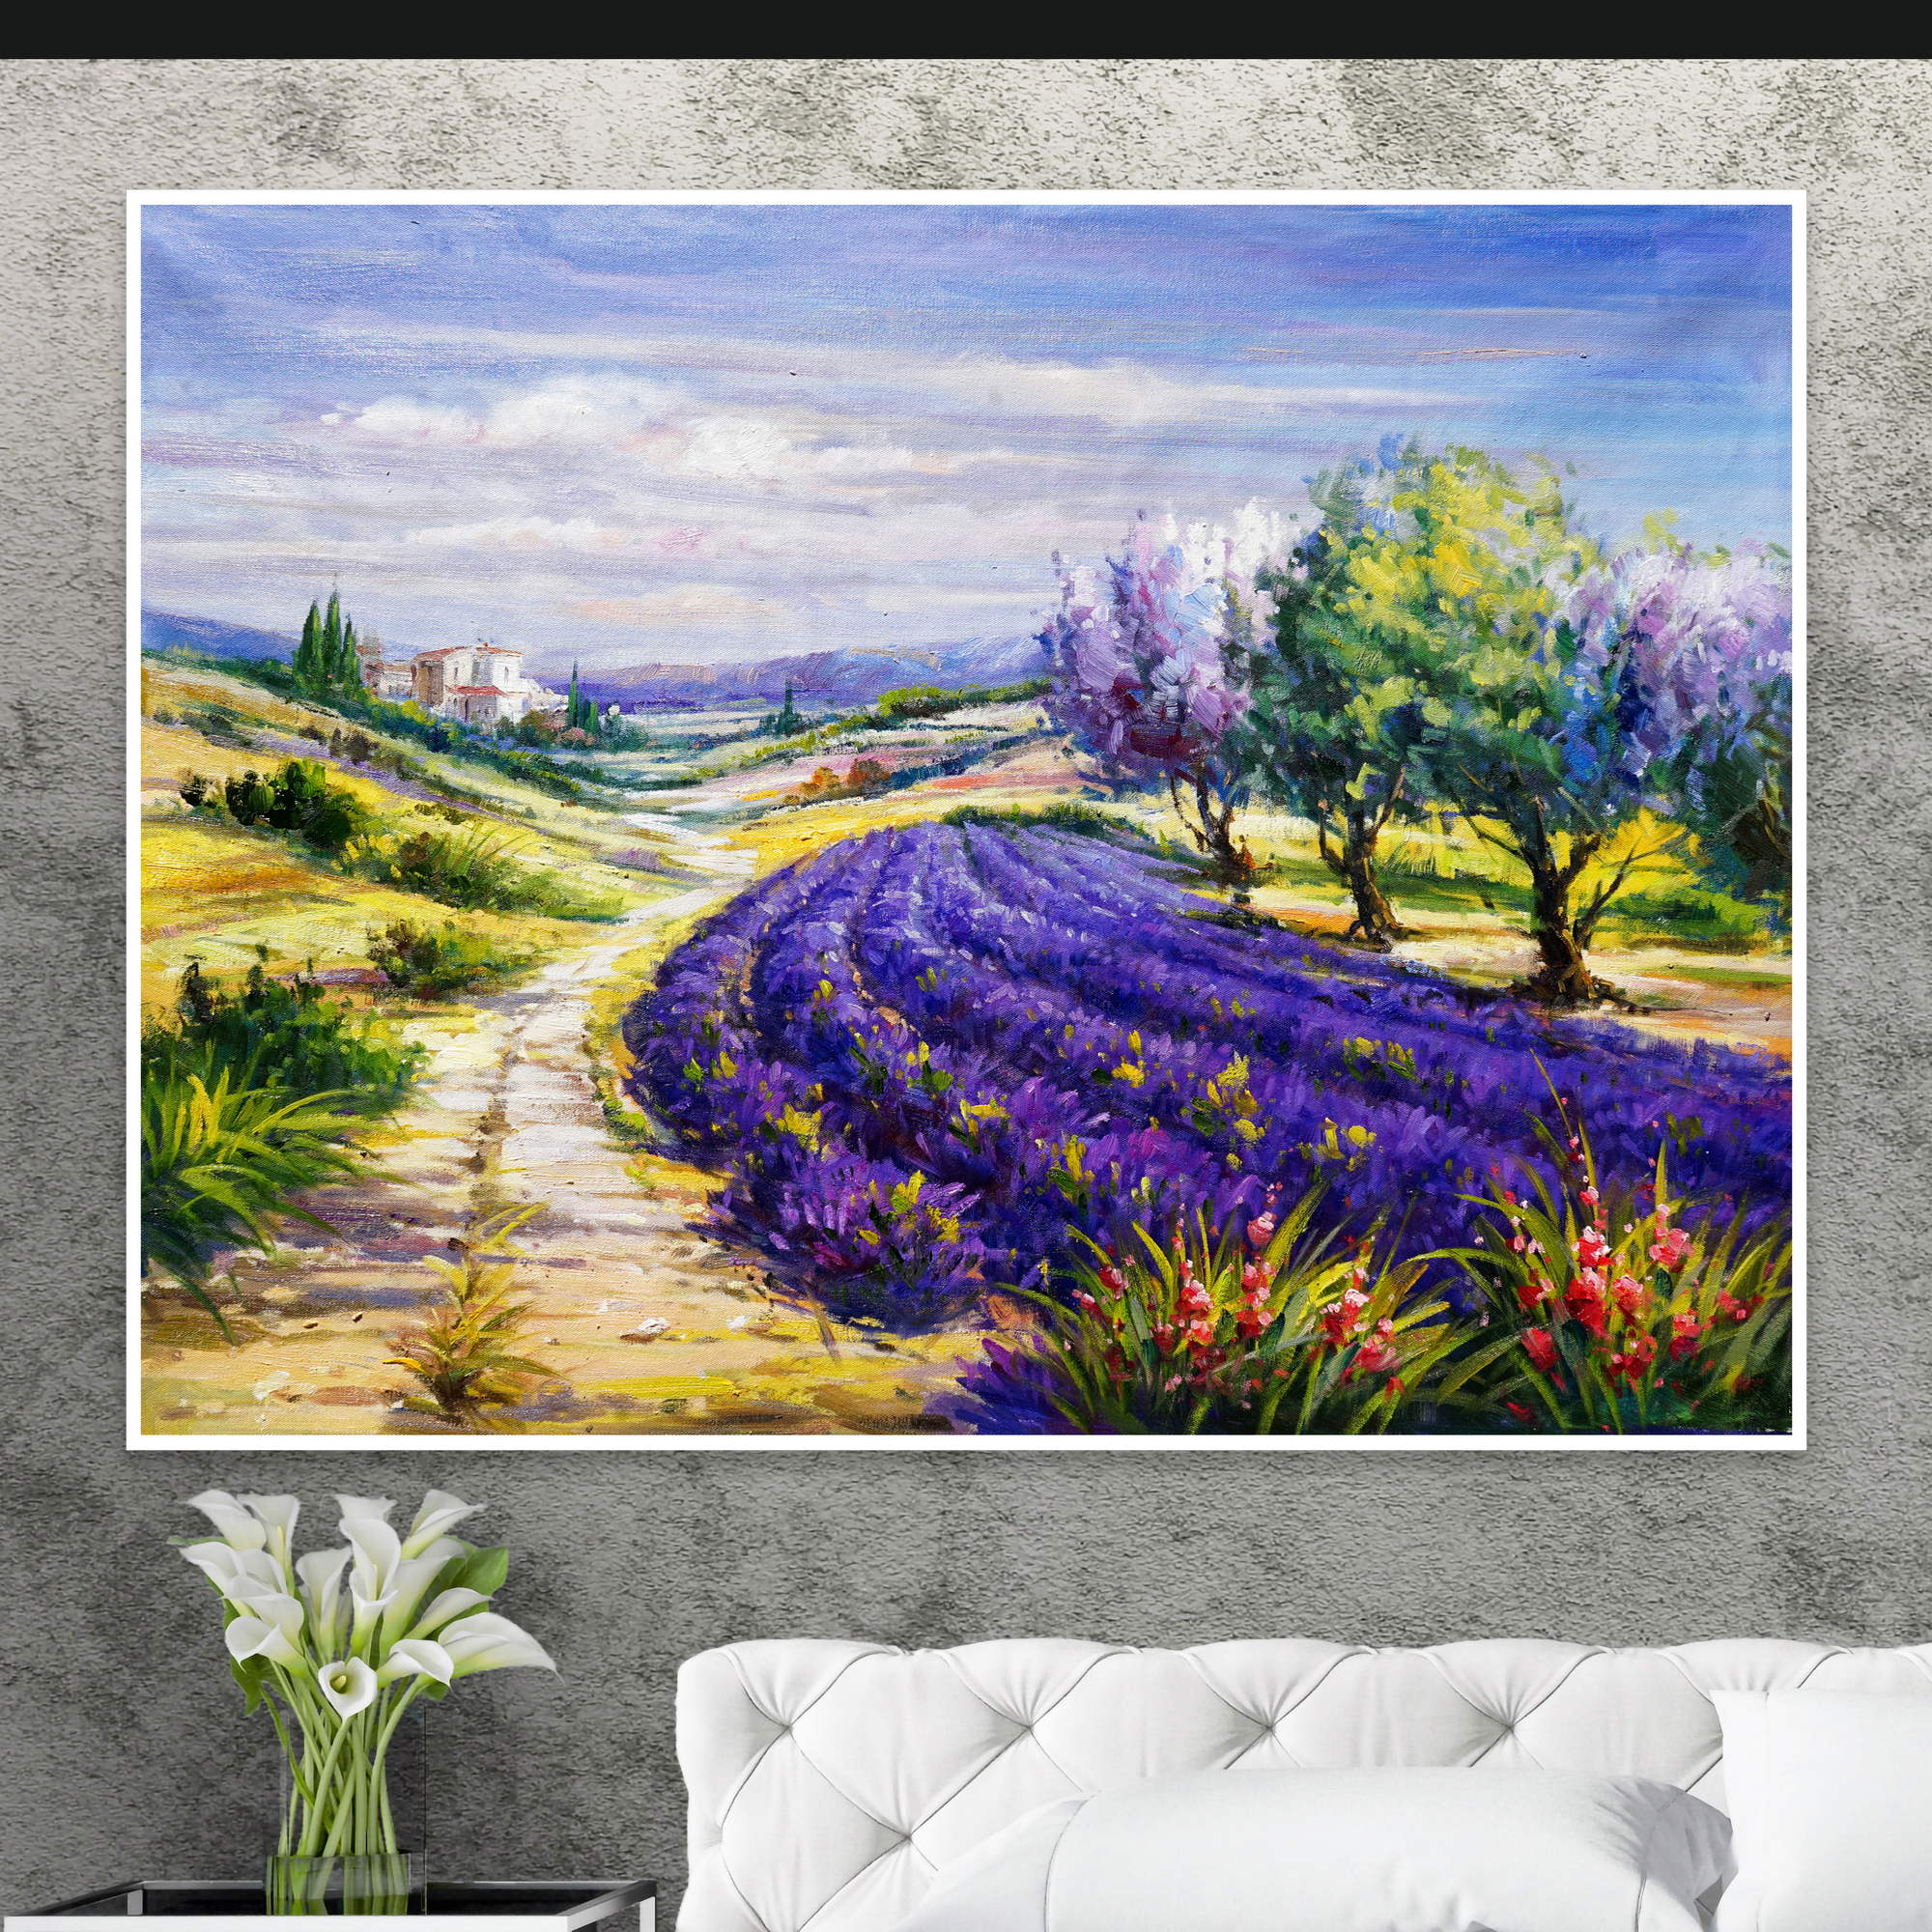 Dipinto impressionista di un paesaggio rurale con campi di lavanda in provenza